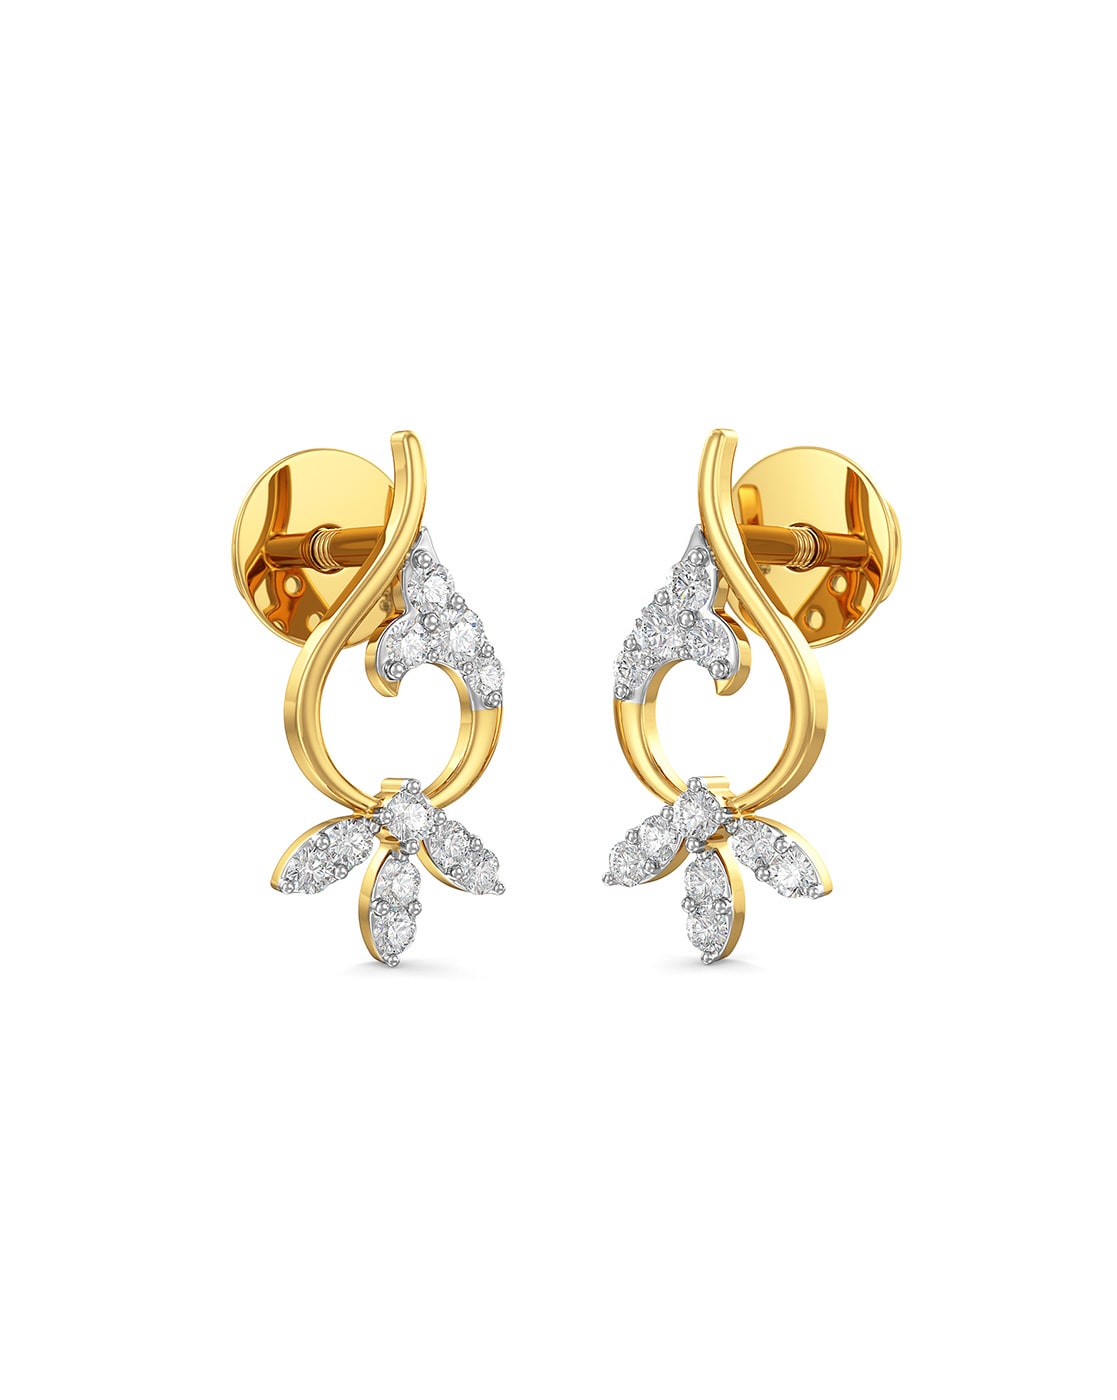 22K Gold Earrings For Women - 235-GER15980 in 2.700 Grams